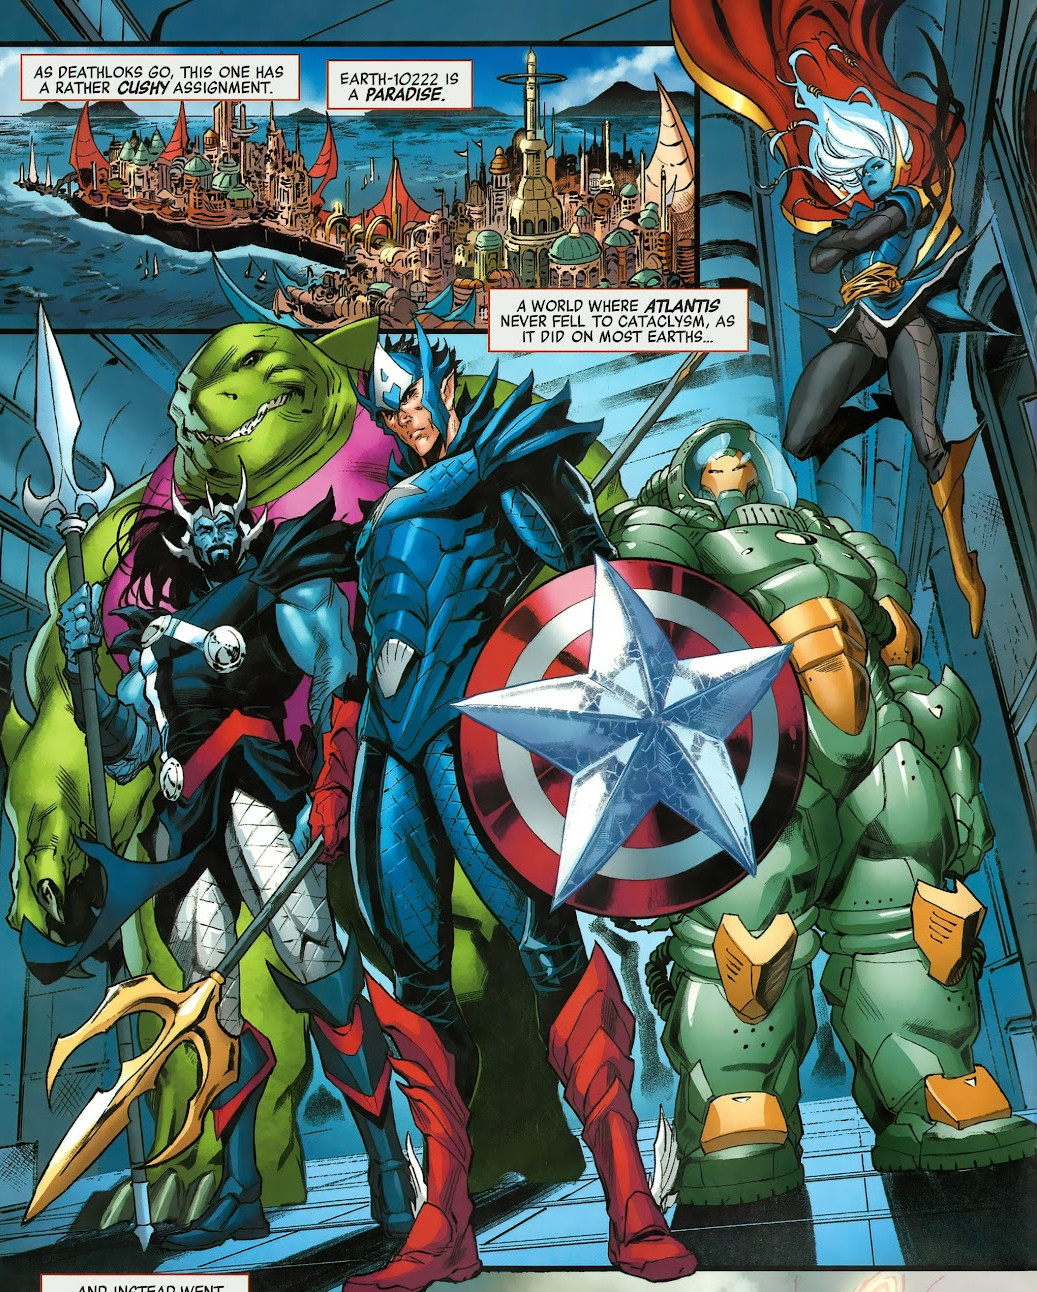 Avengers (Earth-10222) | Marvel Database | Fandom